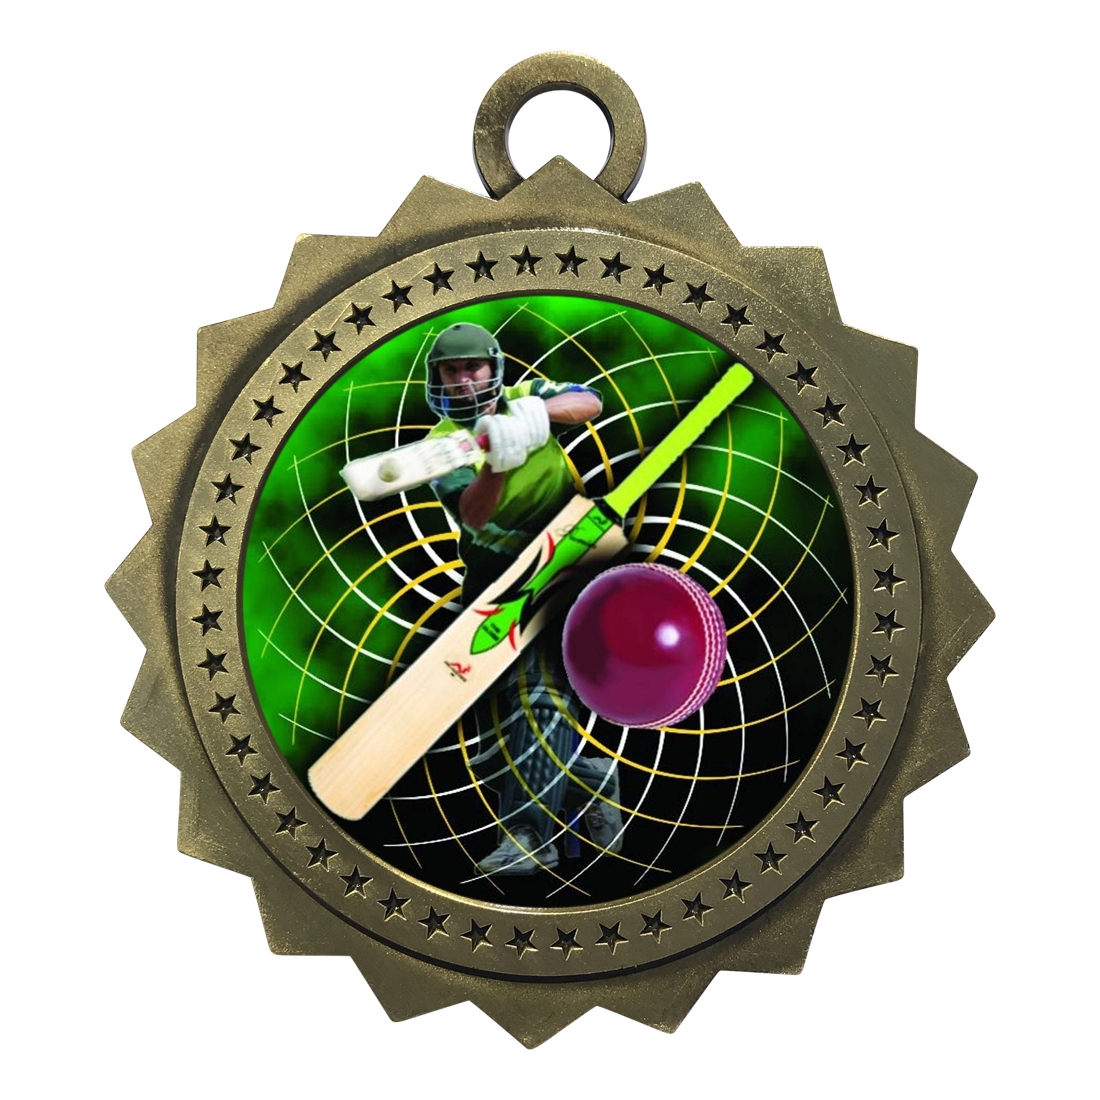 3" Cricket Medal